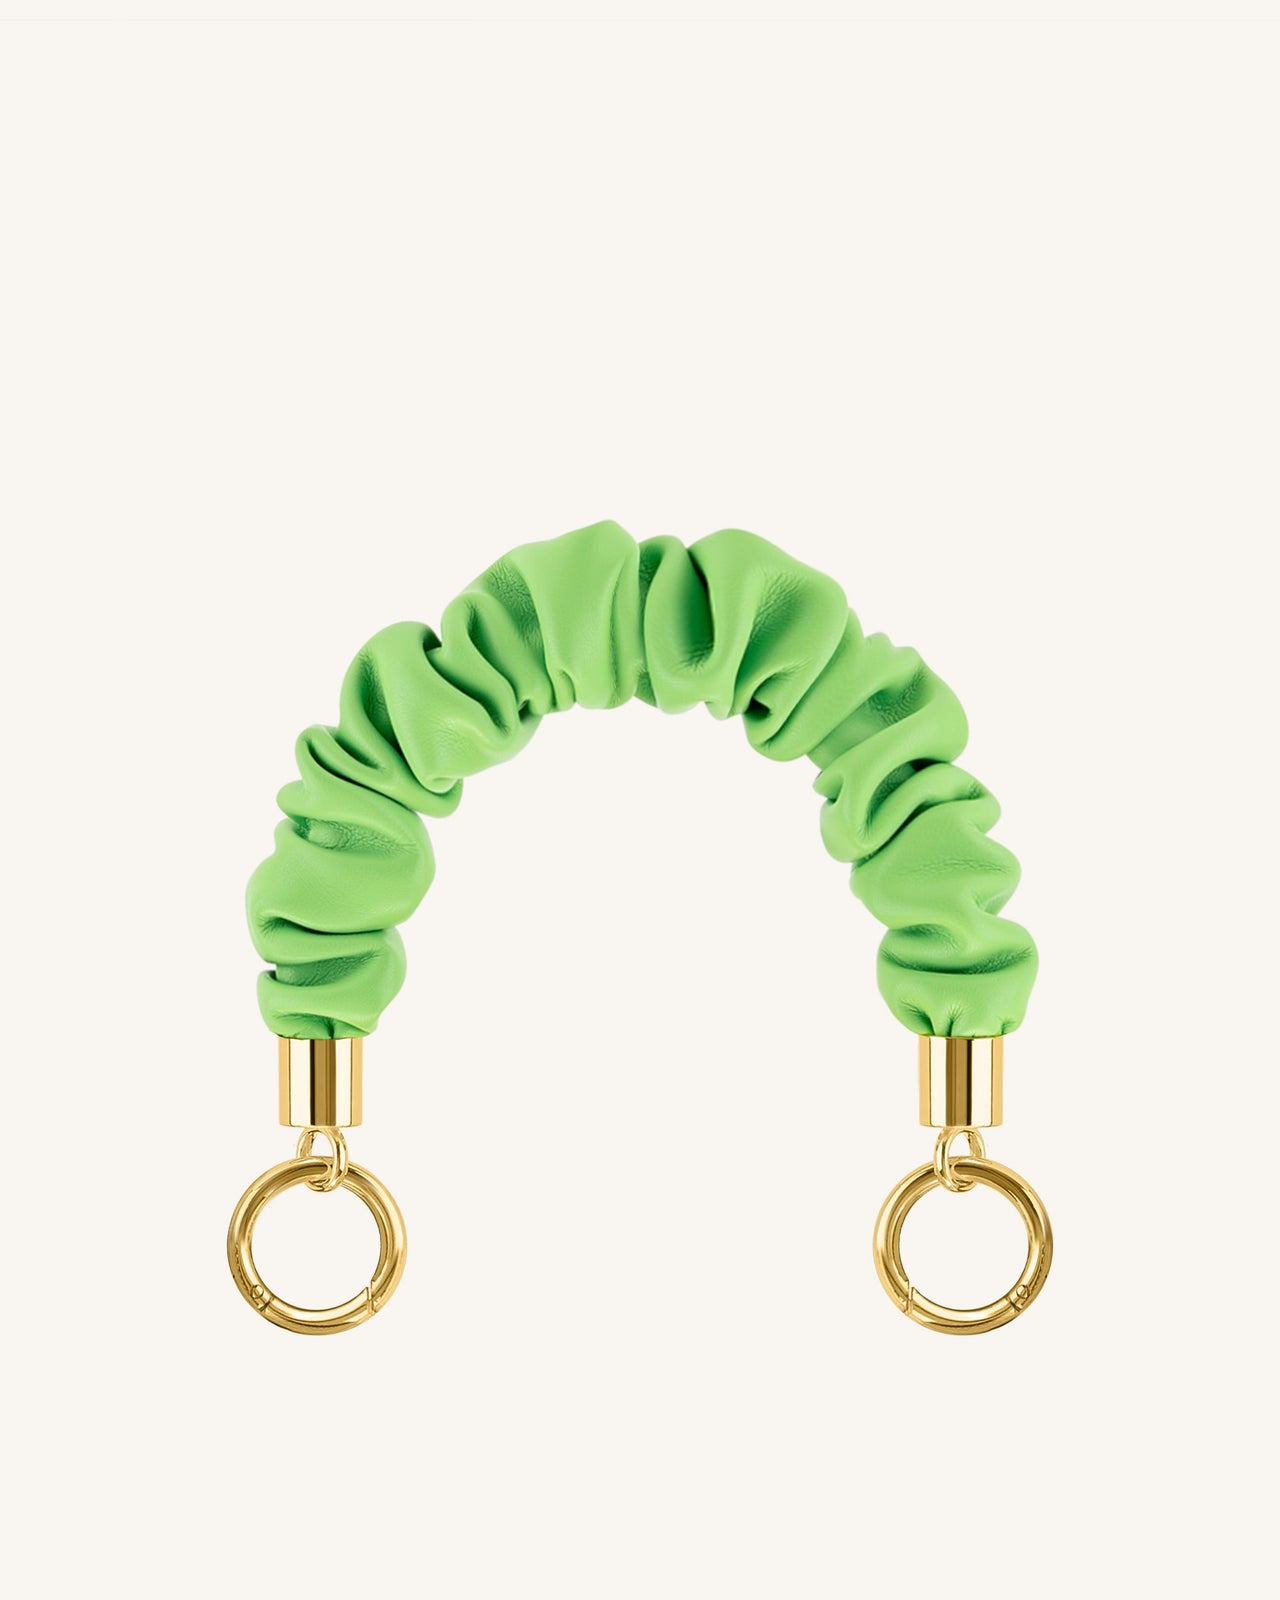 Scrunchie Taschenkette - lindgrün